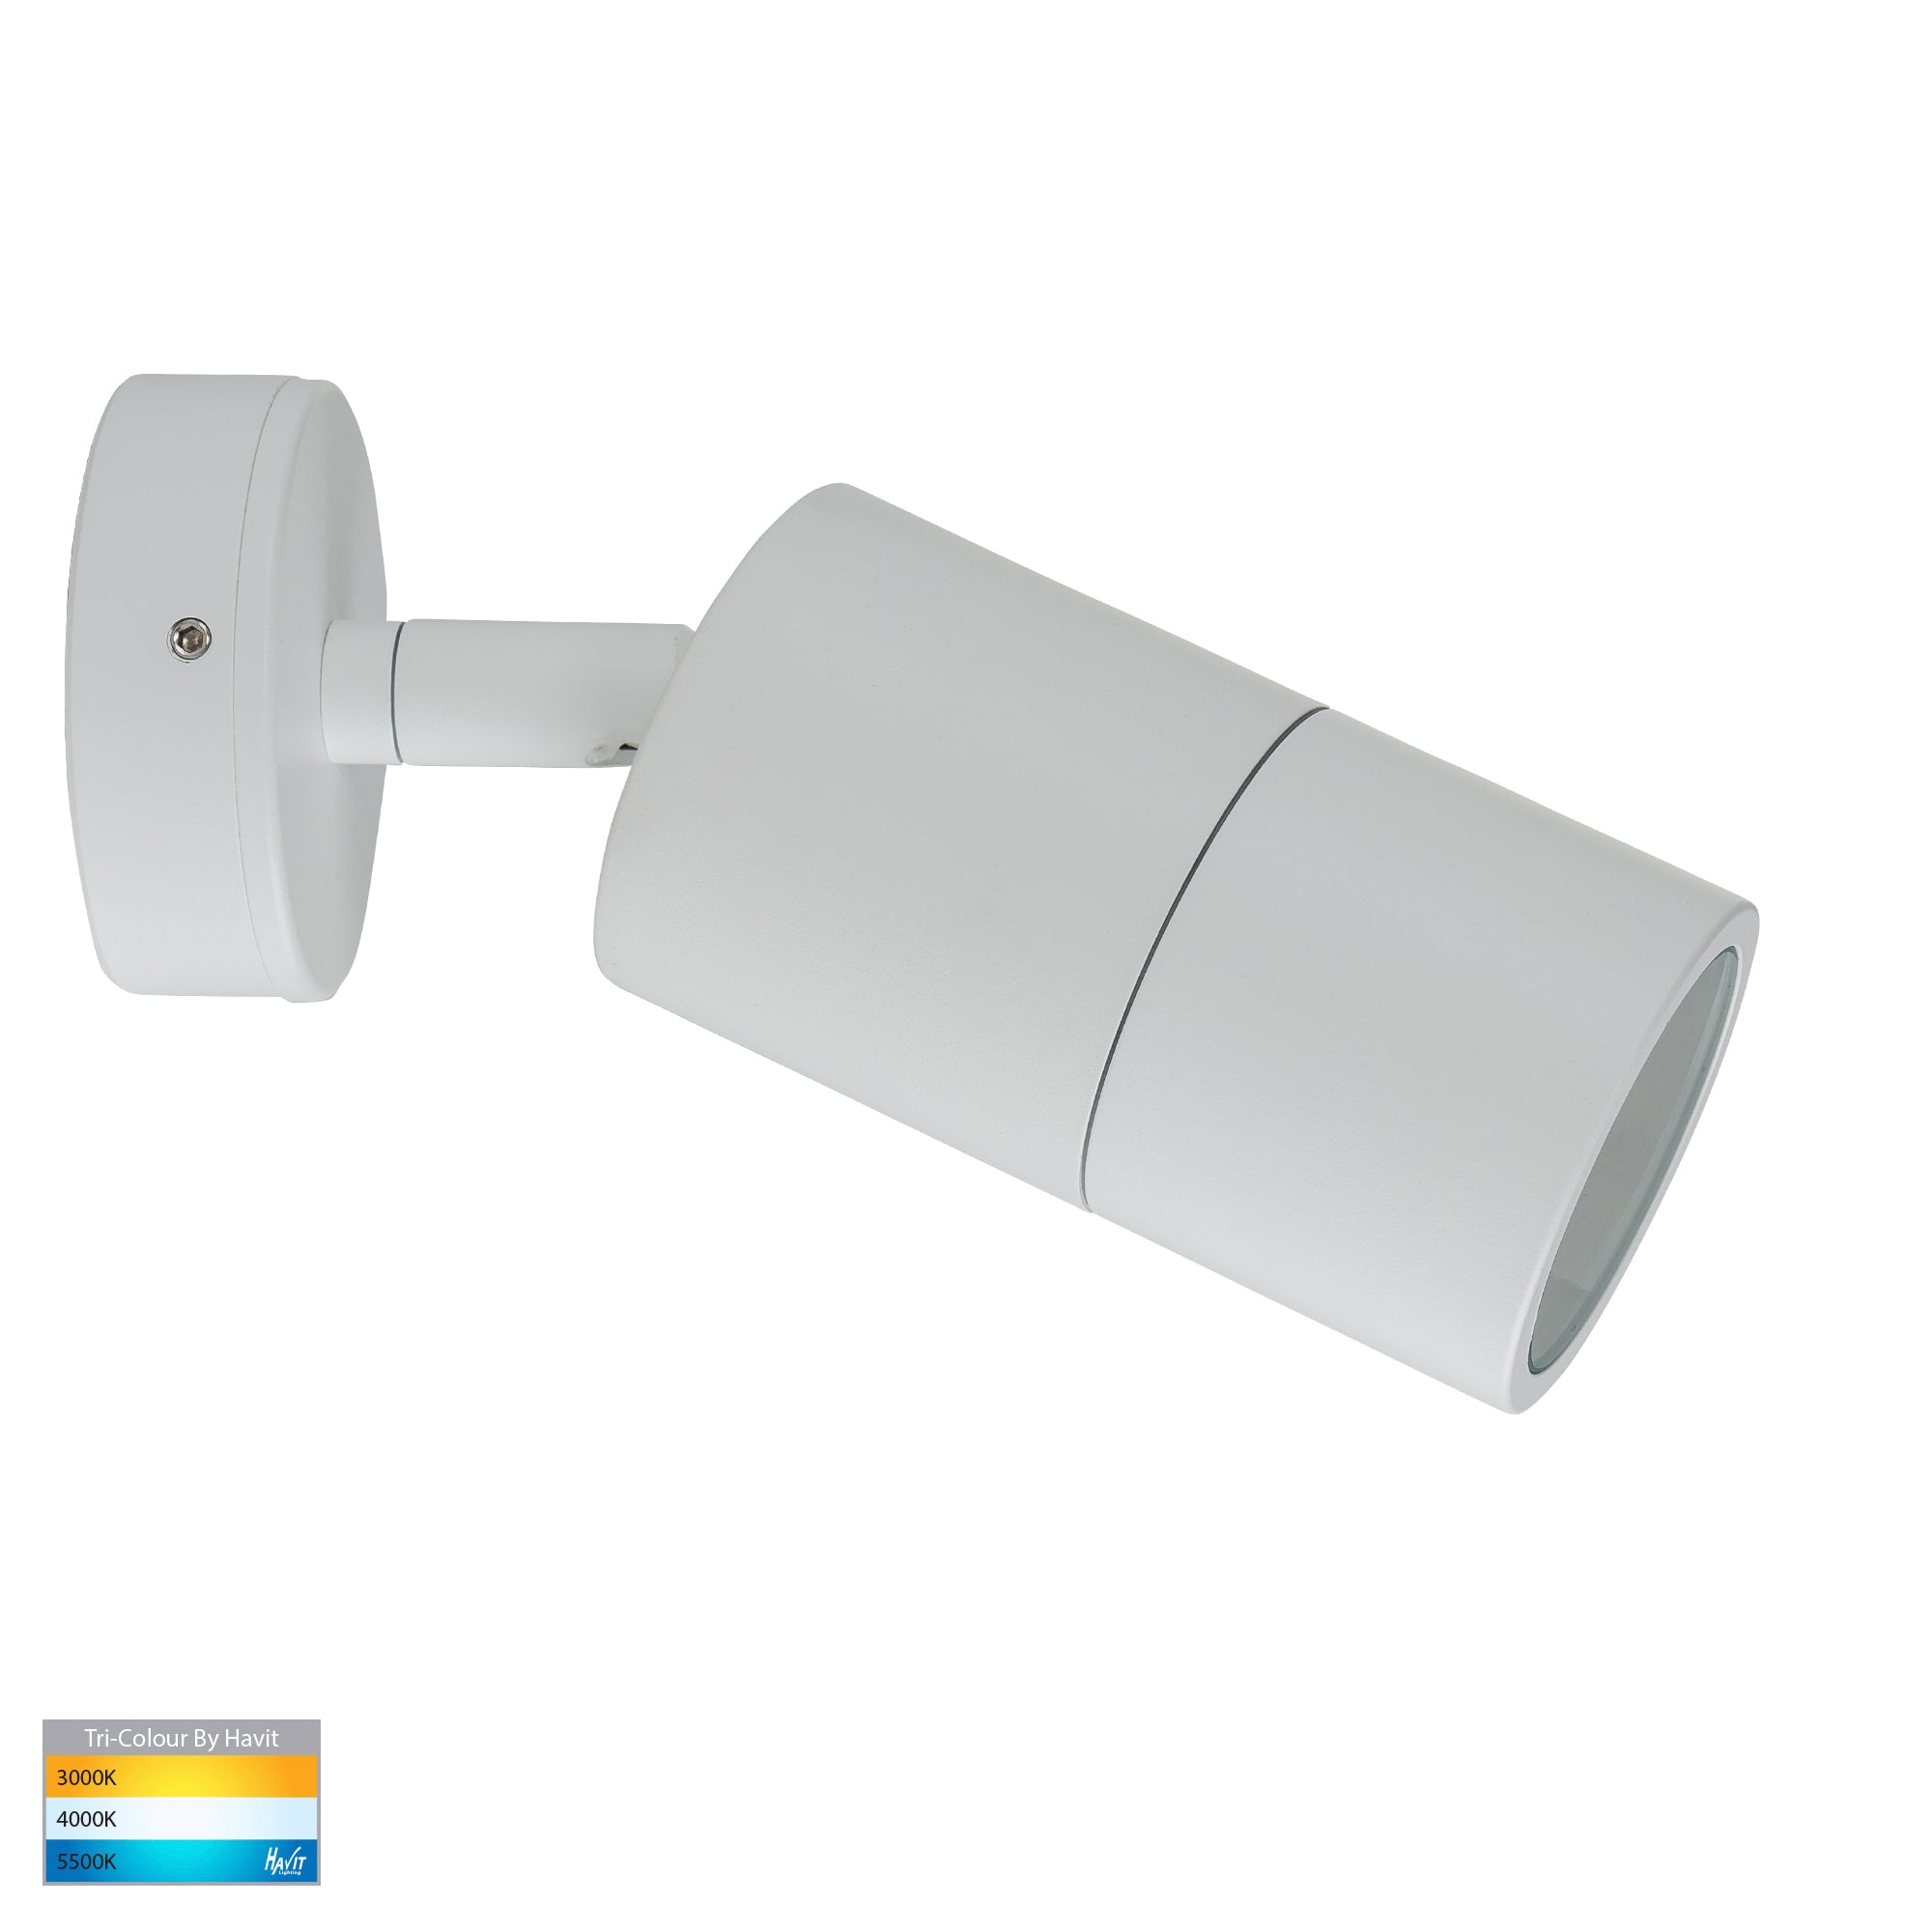 HV1235T-HV1237T - Tivah White TRI Colour Single Adjustable Wall Pillar Lights